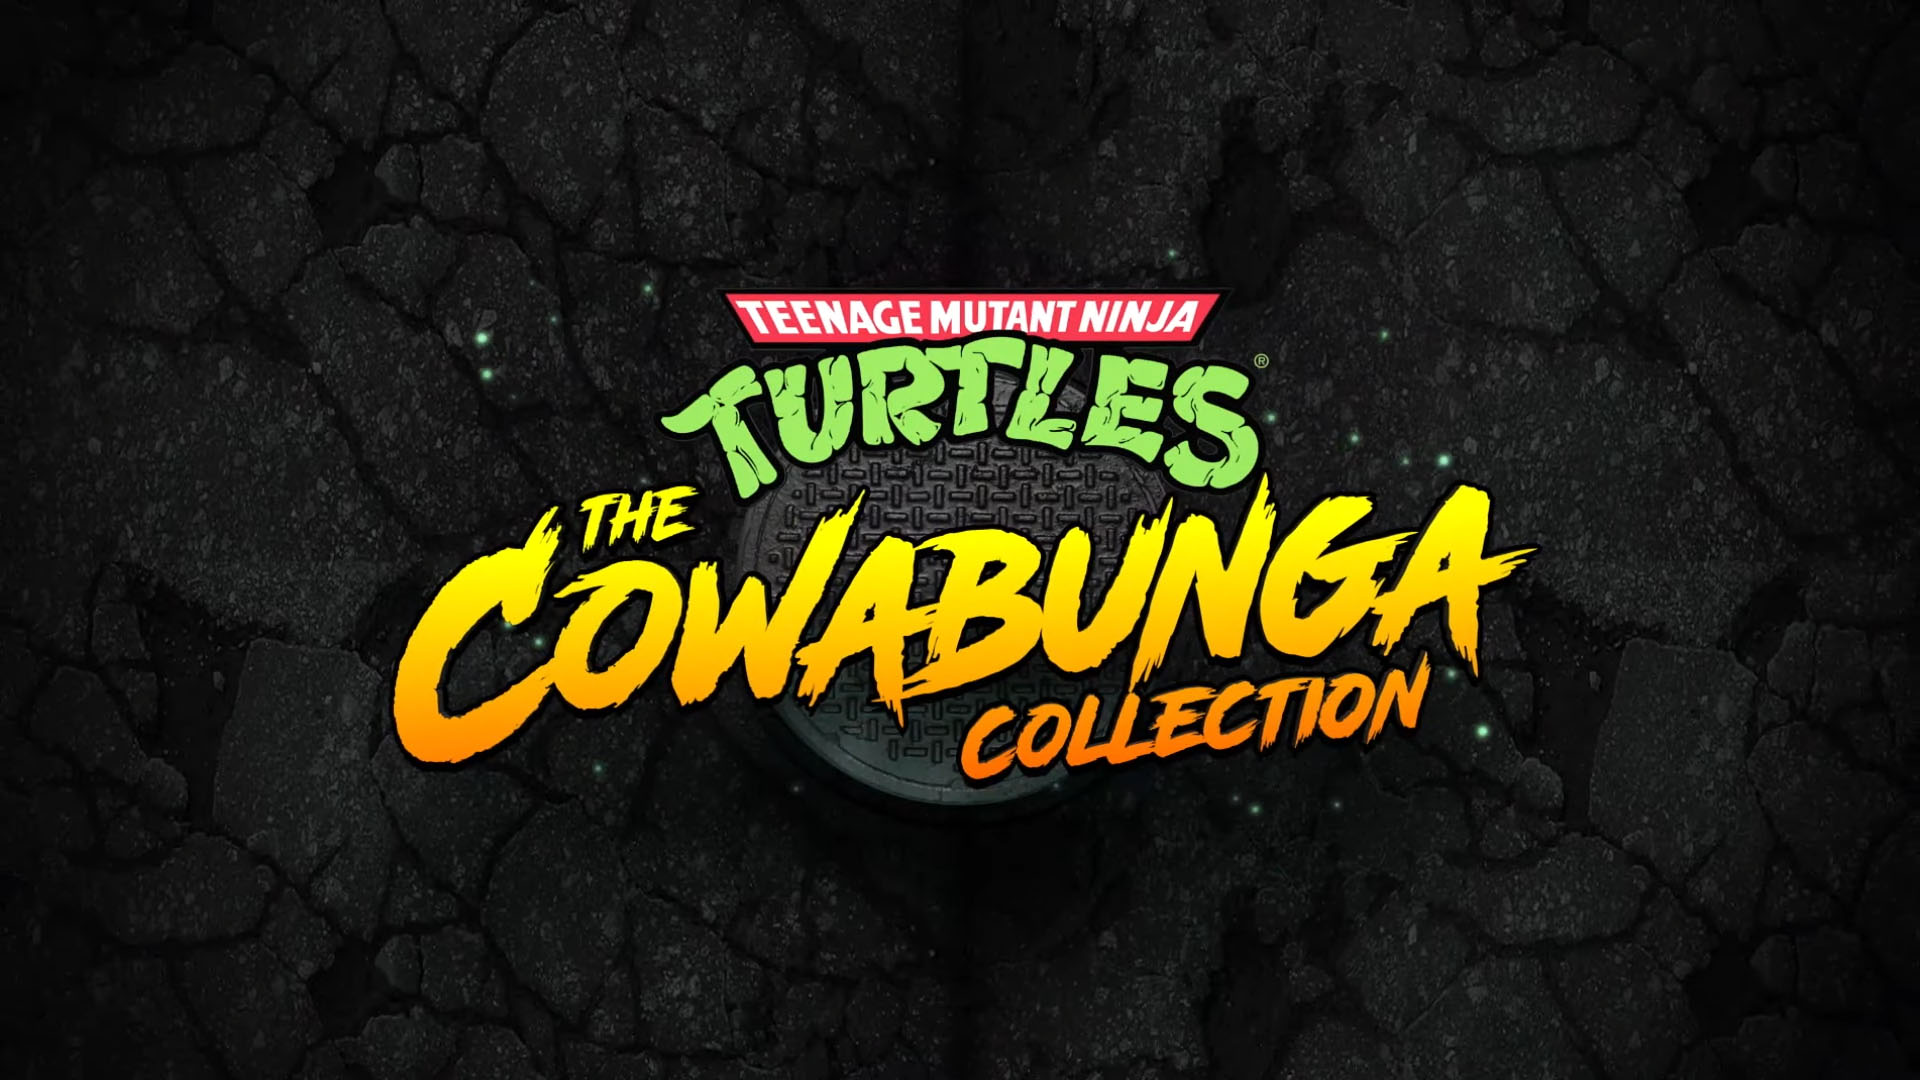 Сборник Teenage Mutant Ninja Turtles: The Cowabunga Collection получает первые оценки от критиков